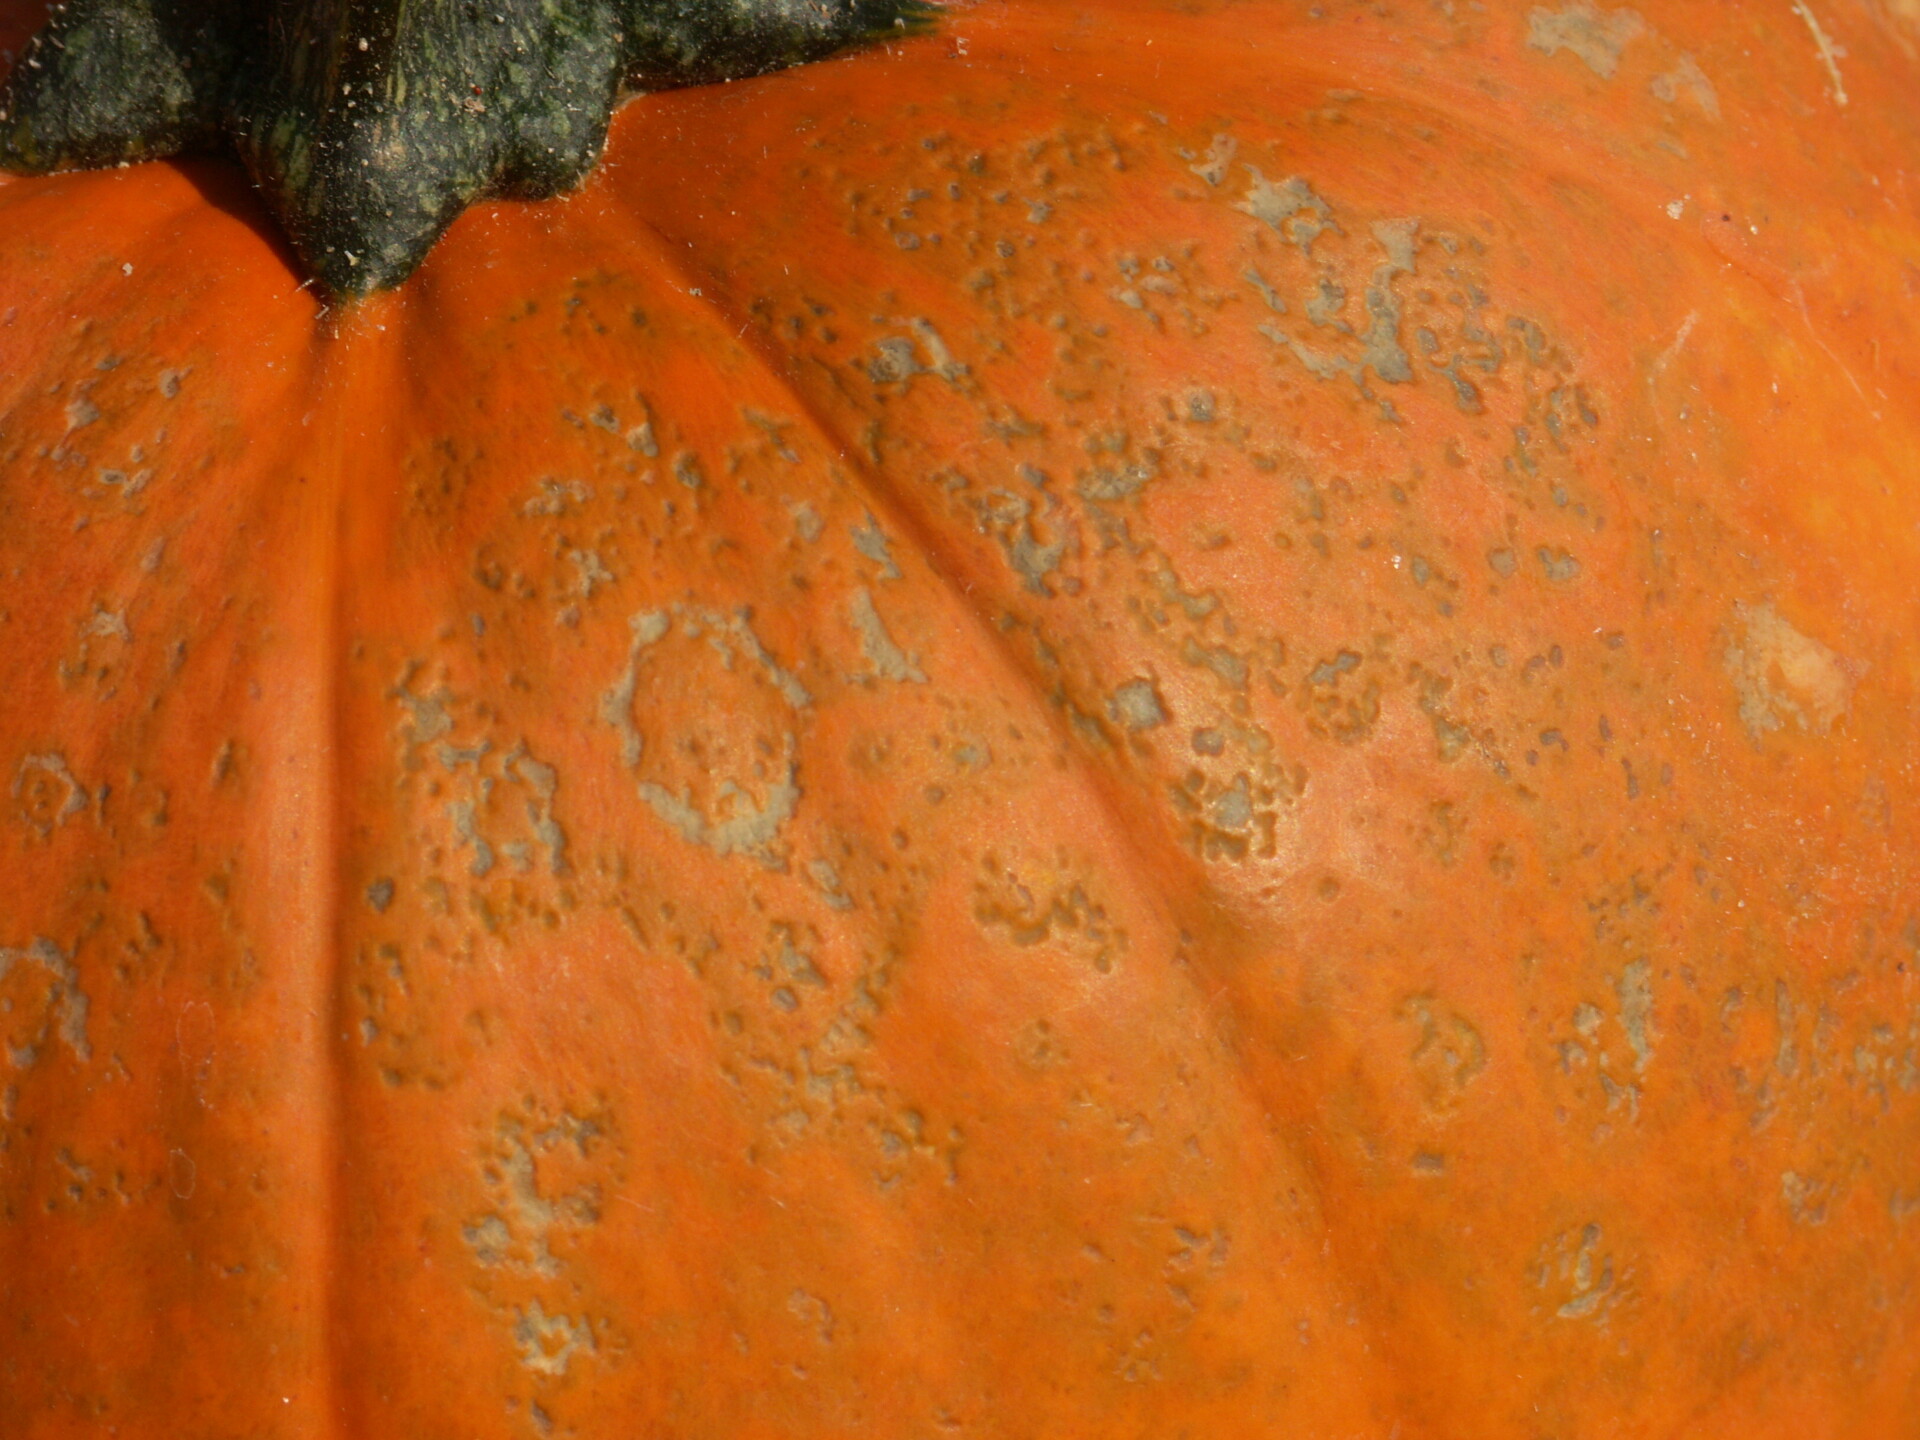 Figure 2. Close up of pumpkin in figure 1.